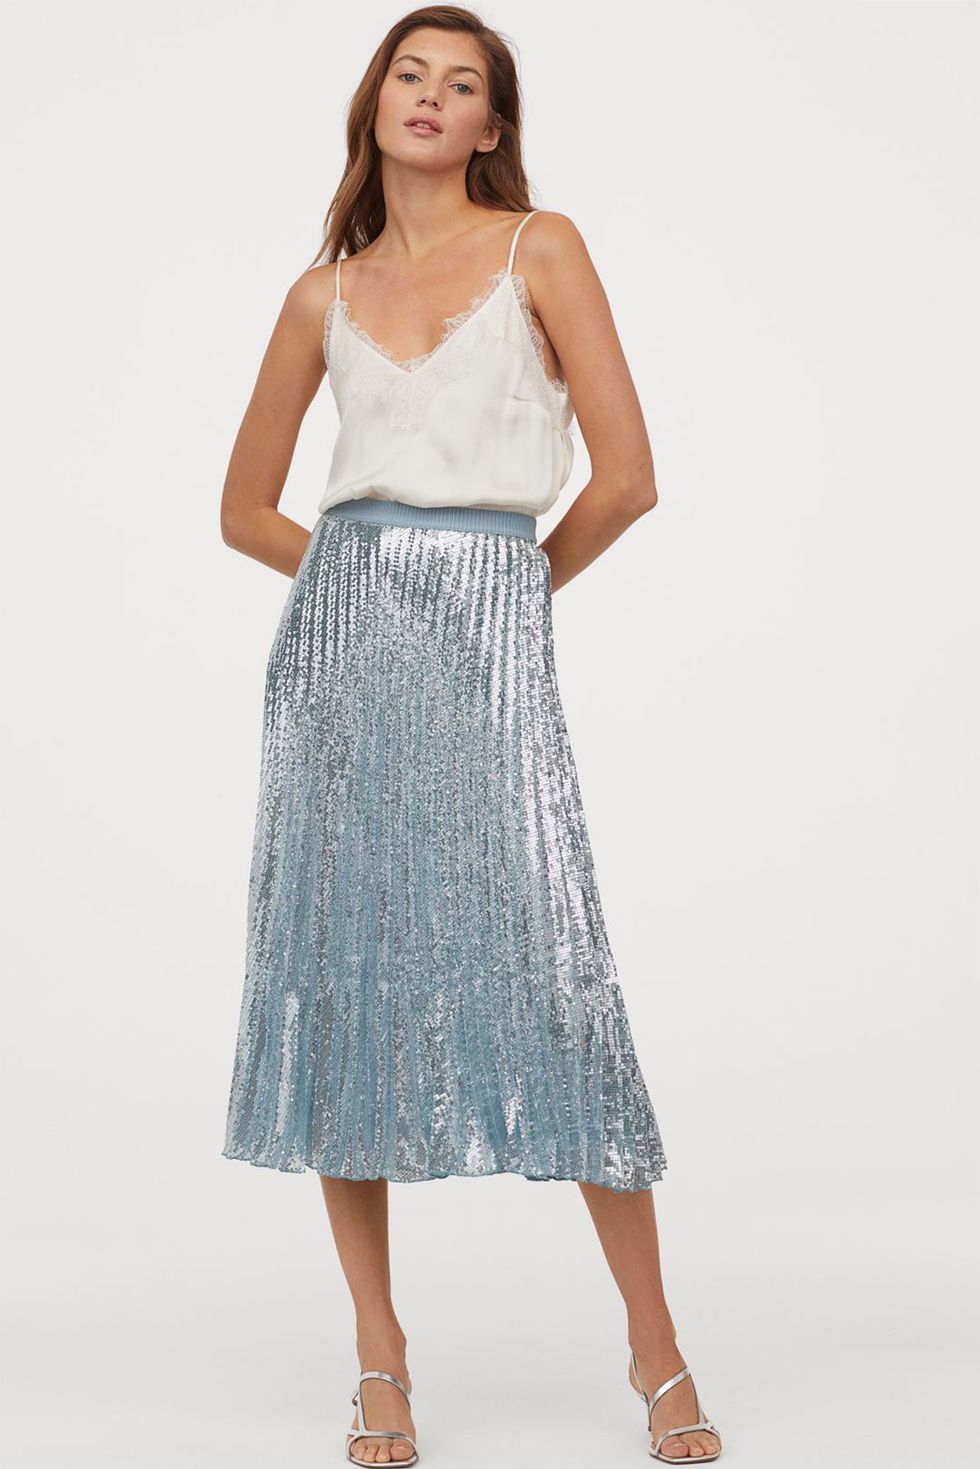 arpón musicas historia La increíble falda plisada de lentejuelas de H&M es puro estilo